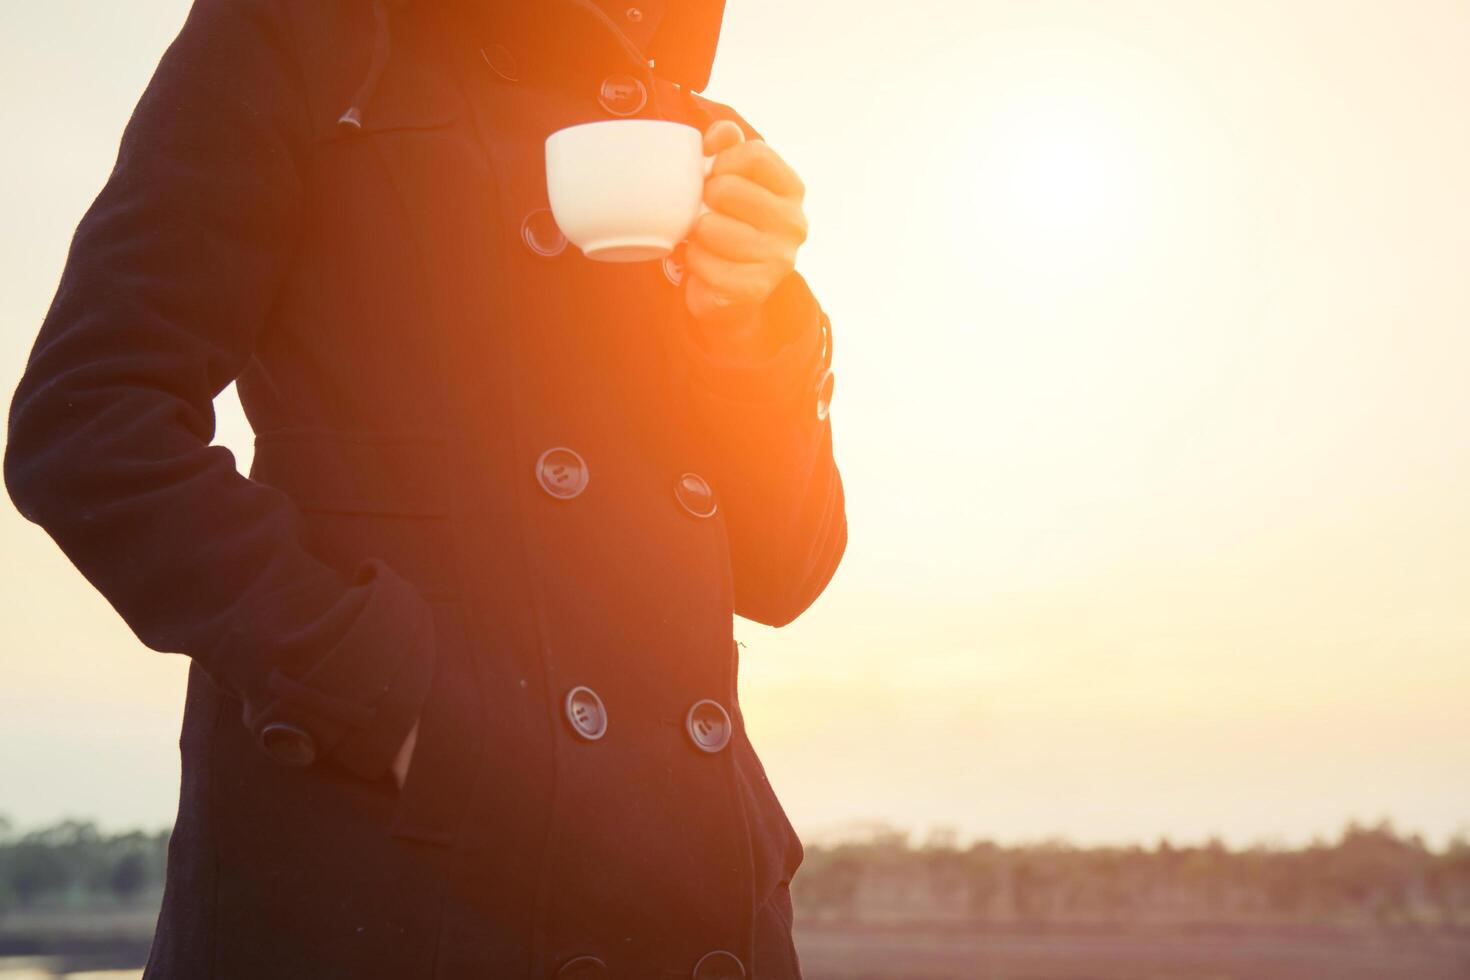 vrouwenhanden met een kopje koffie, zwarte jas in de ochtend foto